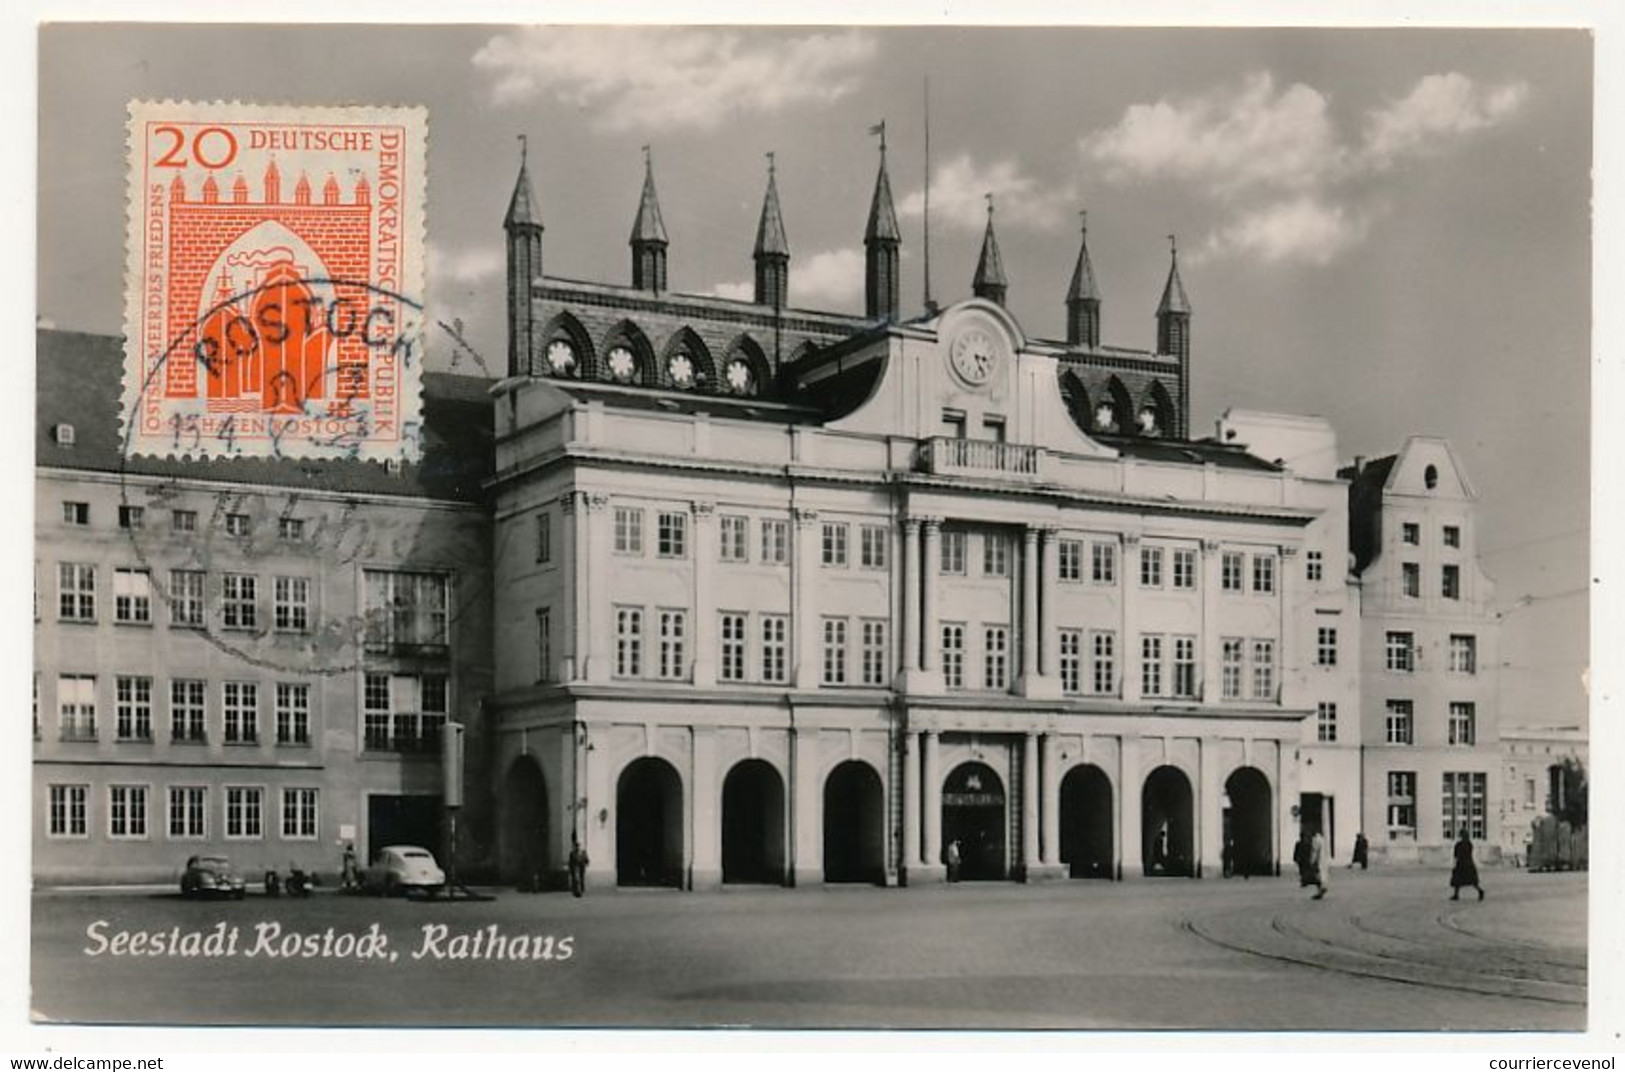 ALLEMAGNE EST - Carte Maximum - Seestadt Rostock, Rathaus - 13/4/1959 - Cartes-Maximum (CM)